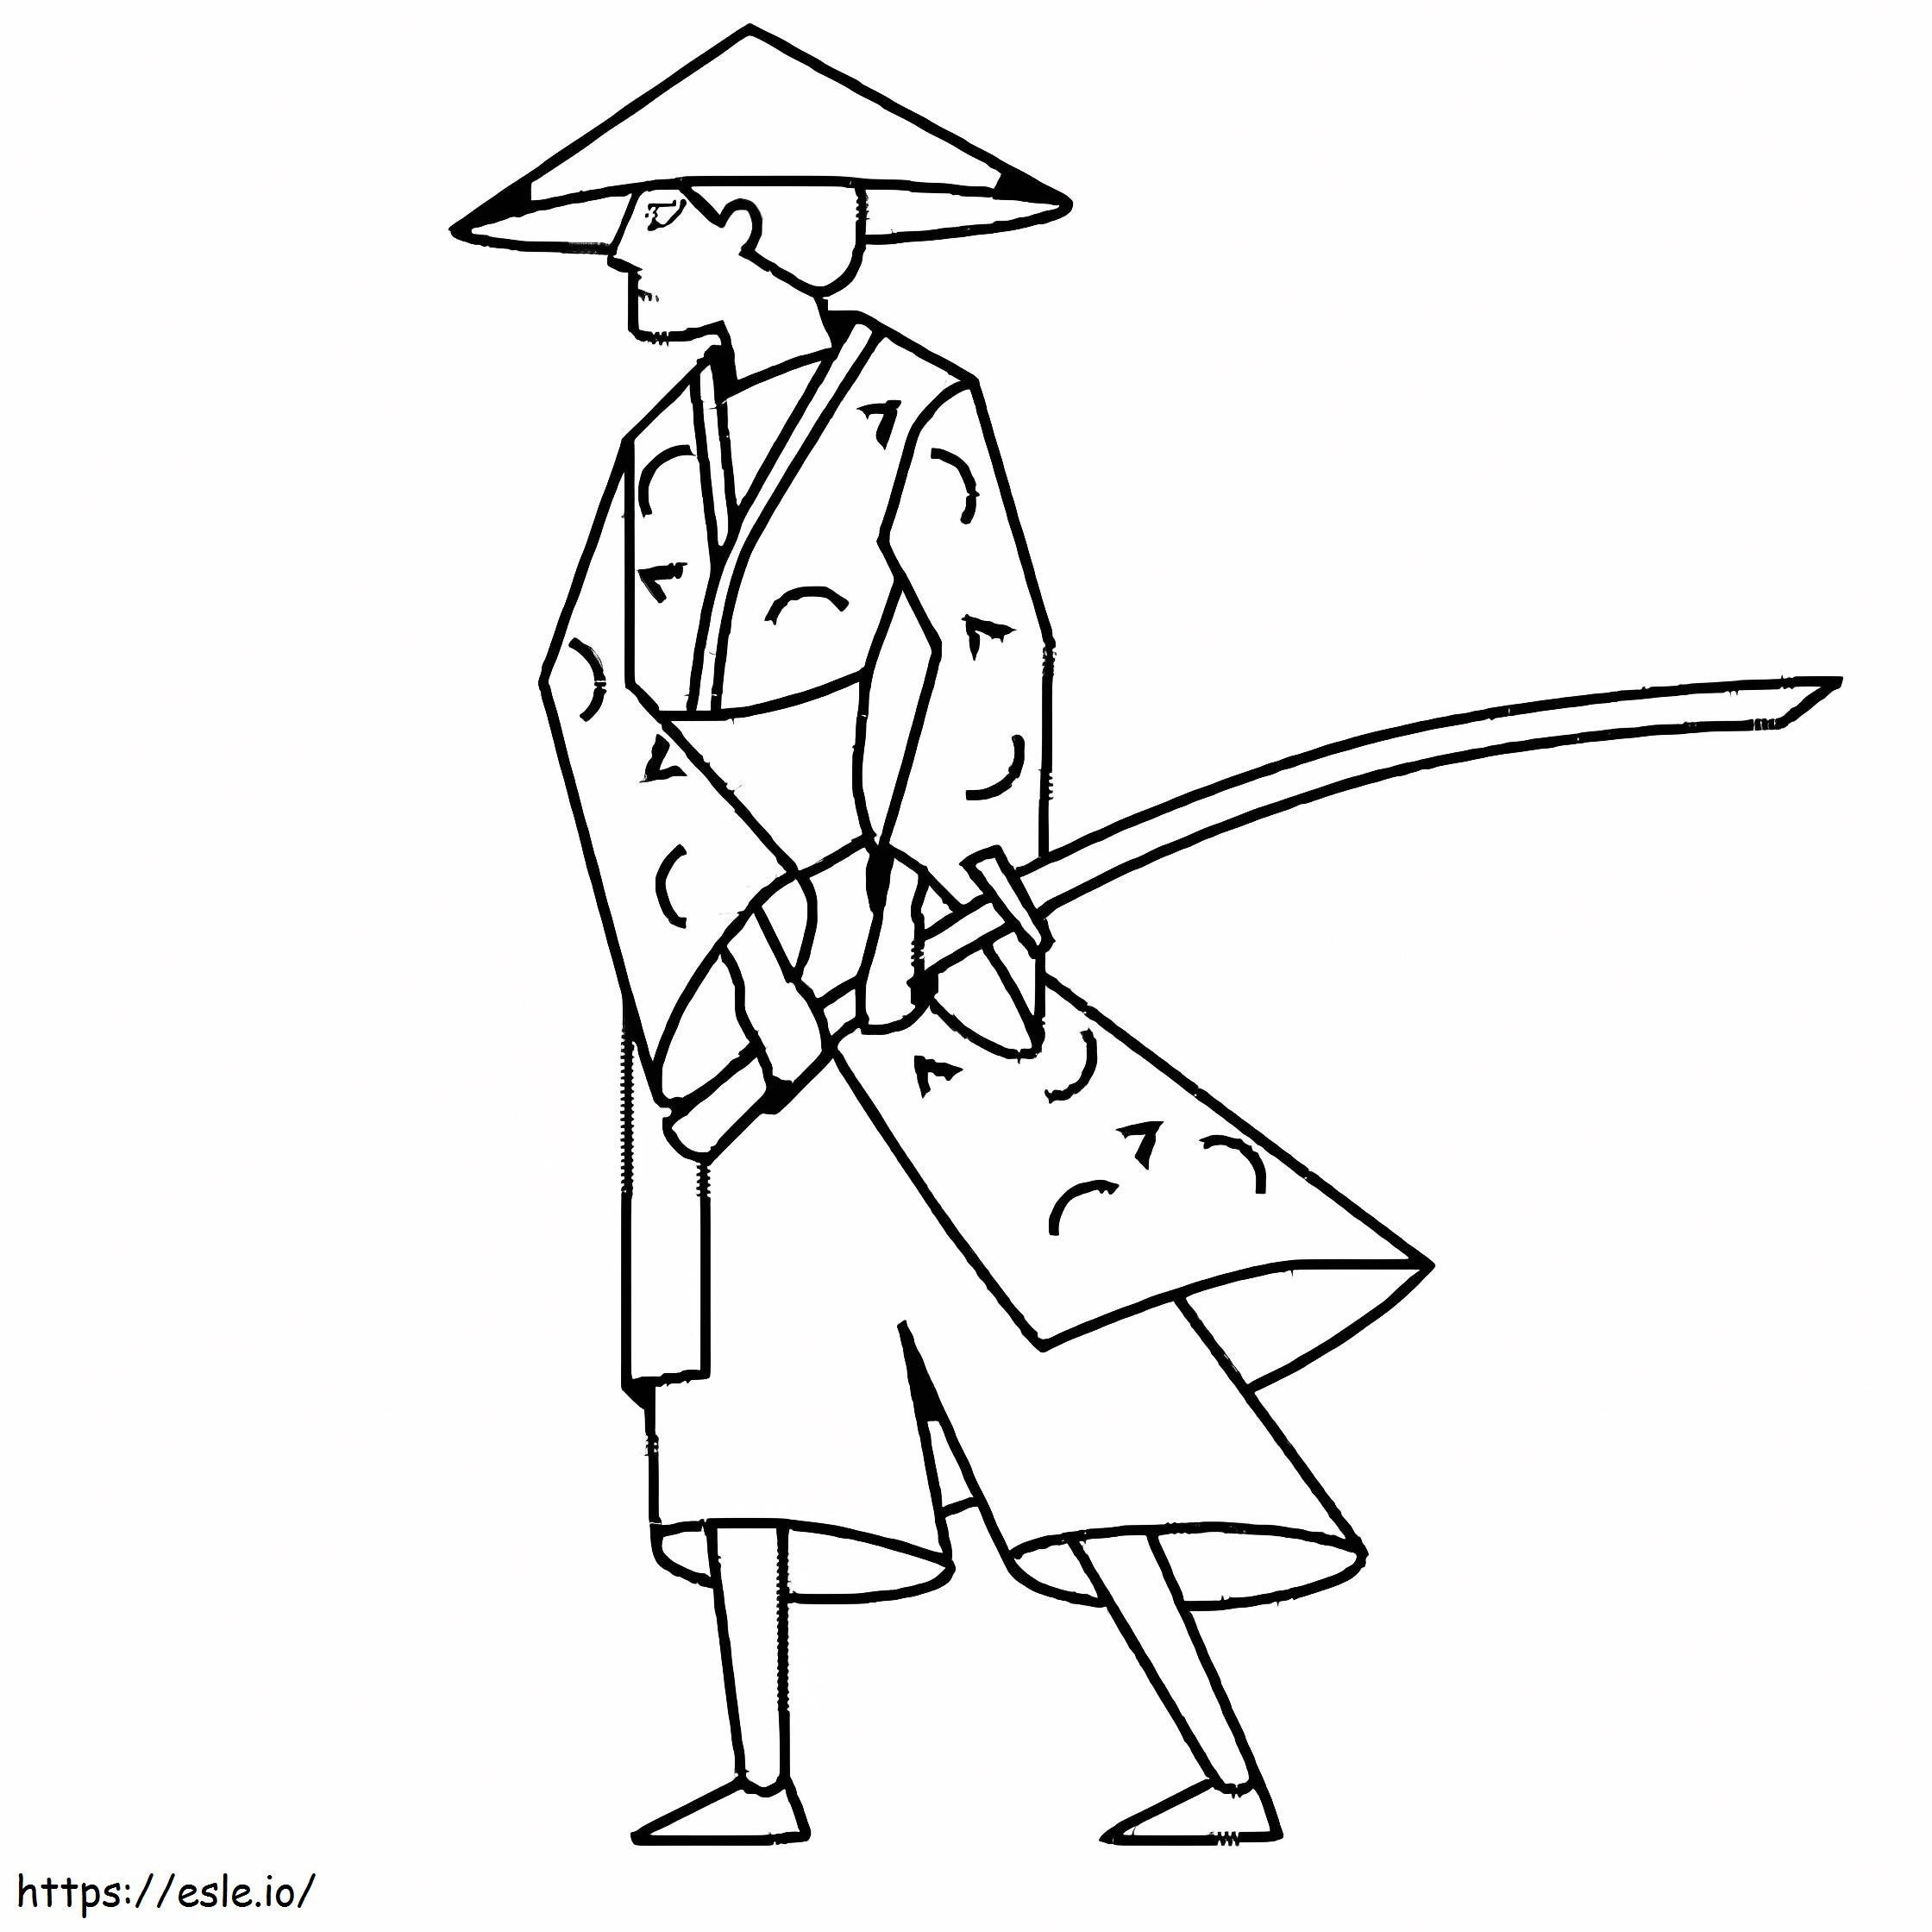 Einfacher Samurai ausmalbilder